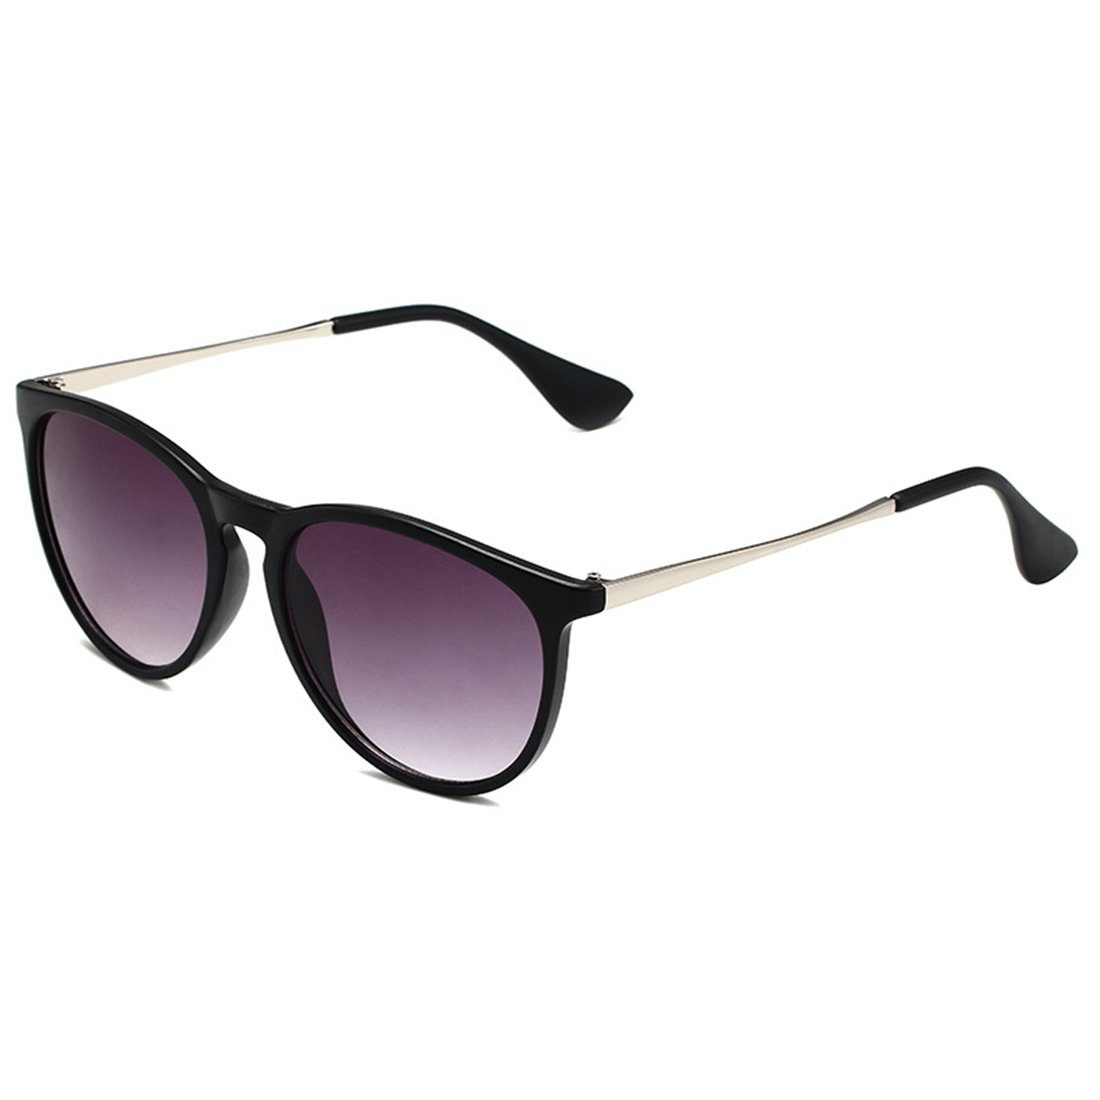 Haiaveng Sonnenbrille Vintage Runde Sonnenbrille Unisex Modische Retro-Brille,Brille mit UV400-Schutz purple | Sonnenbrillen